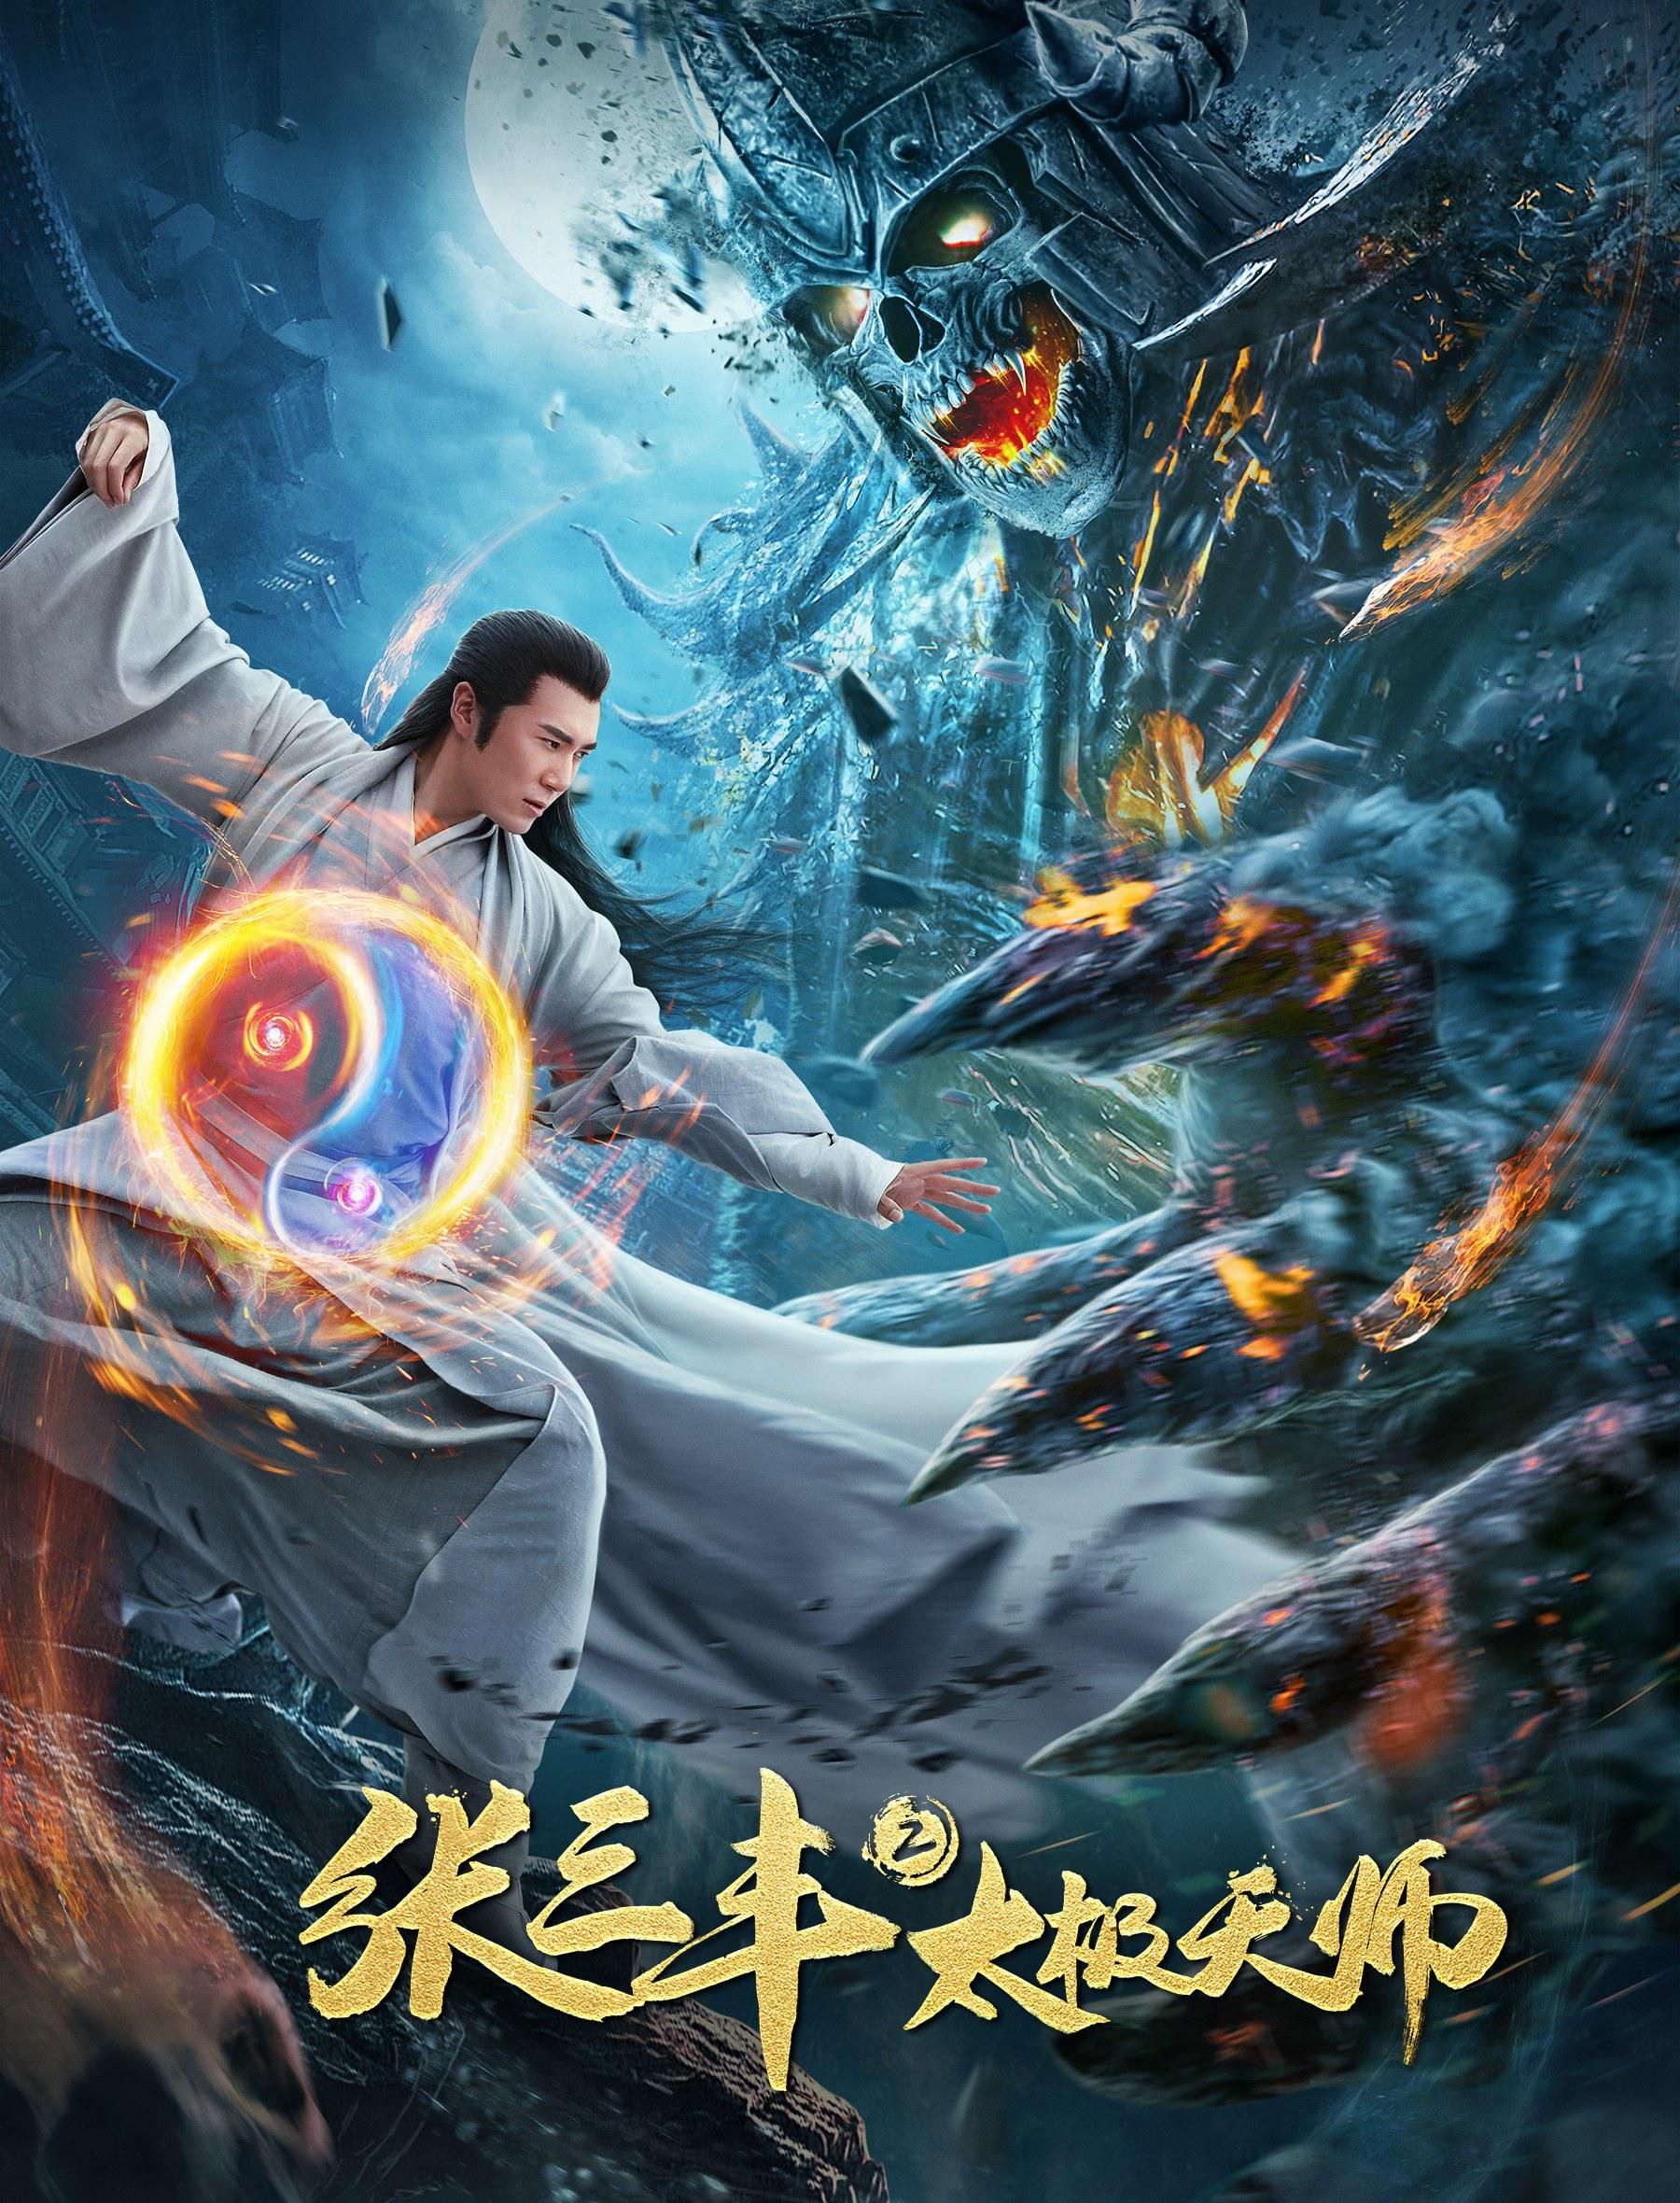 Zhang Sanfeng 2 Tai Chi Master (2020) Hindi Dubbed Movie